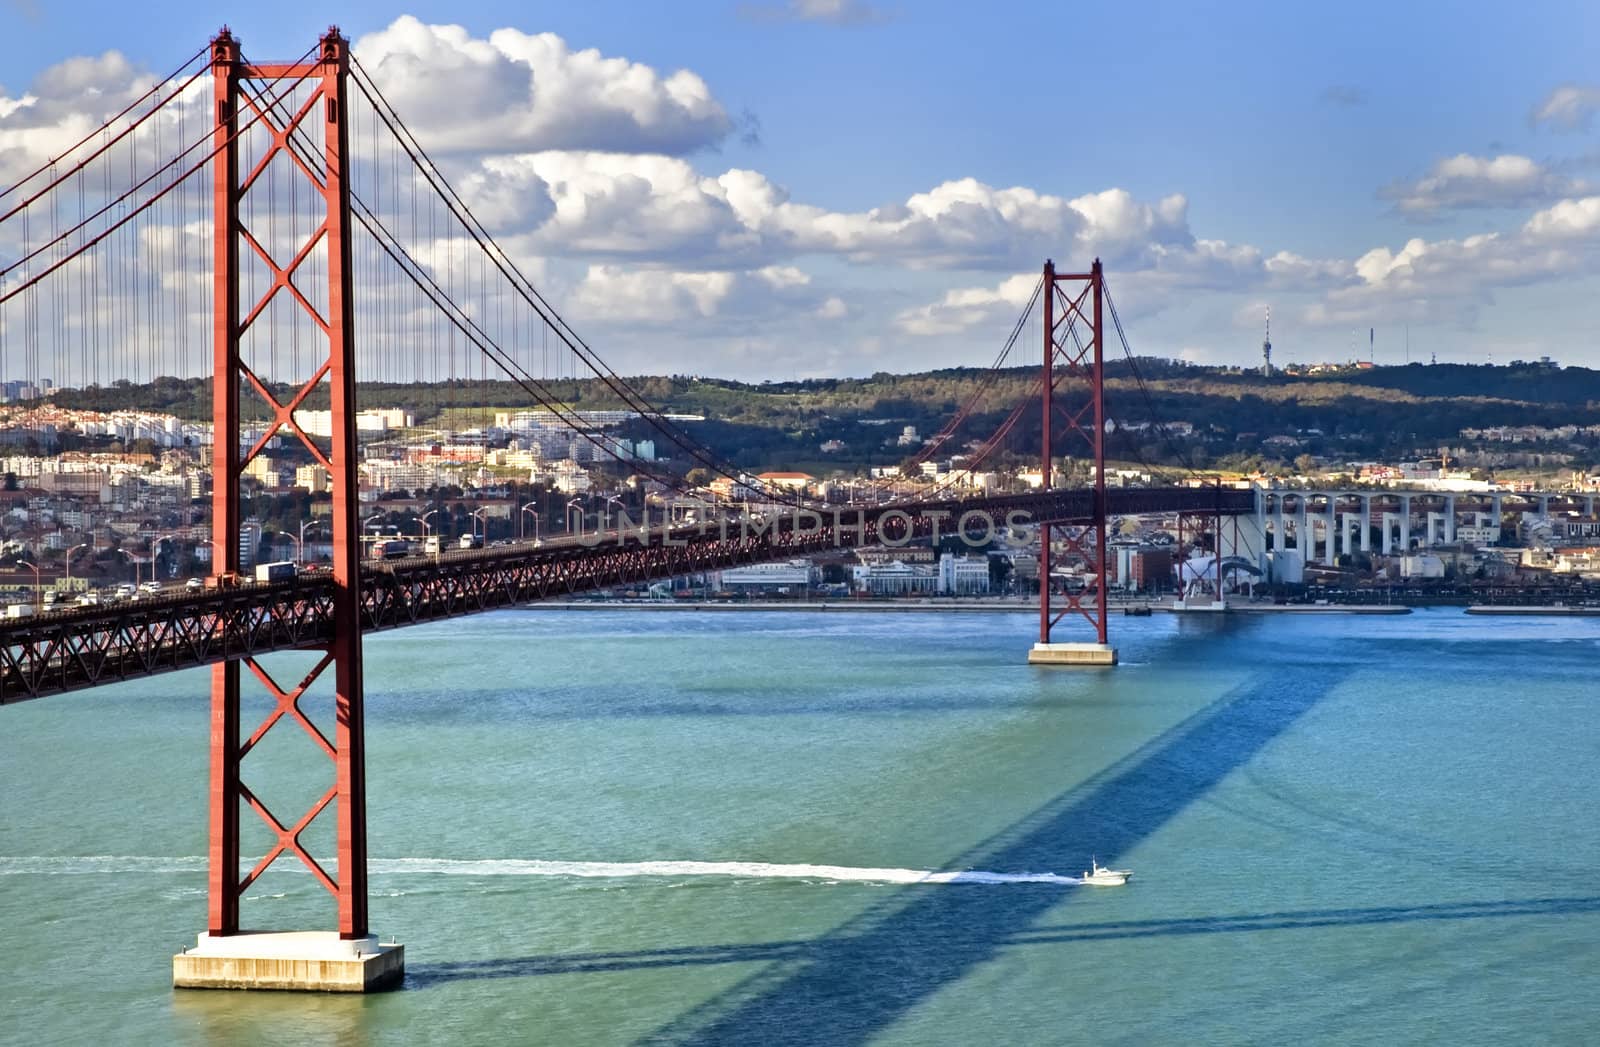 The 25th of April Suspension Bridge in Lisbon, Portugal.